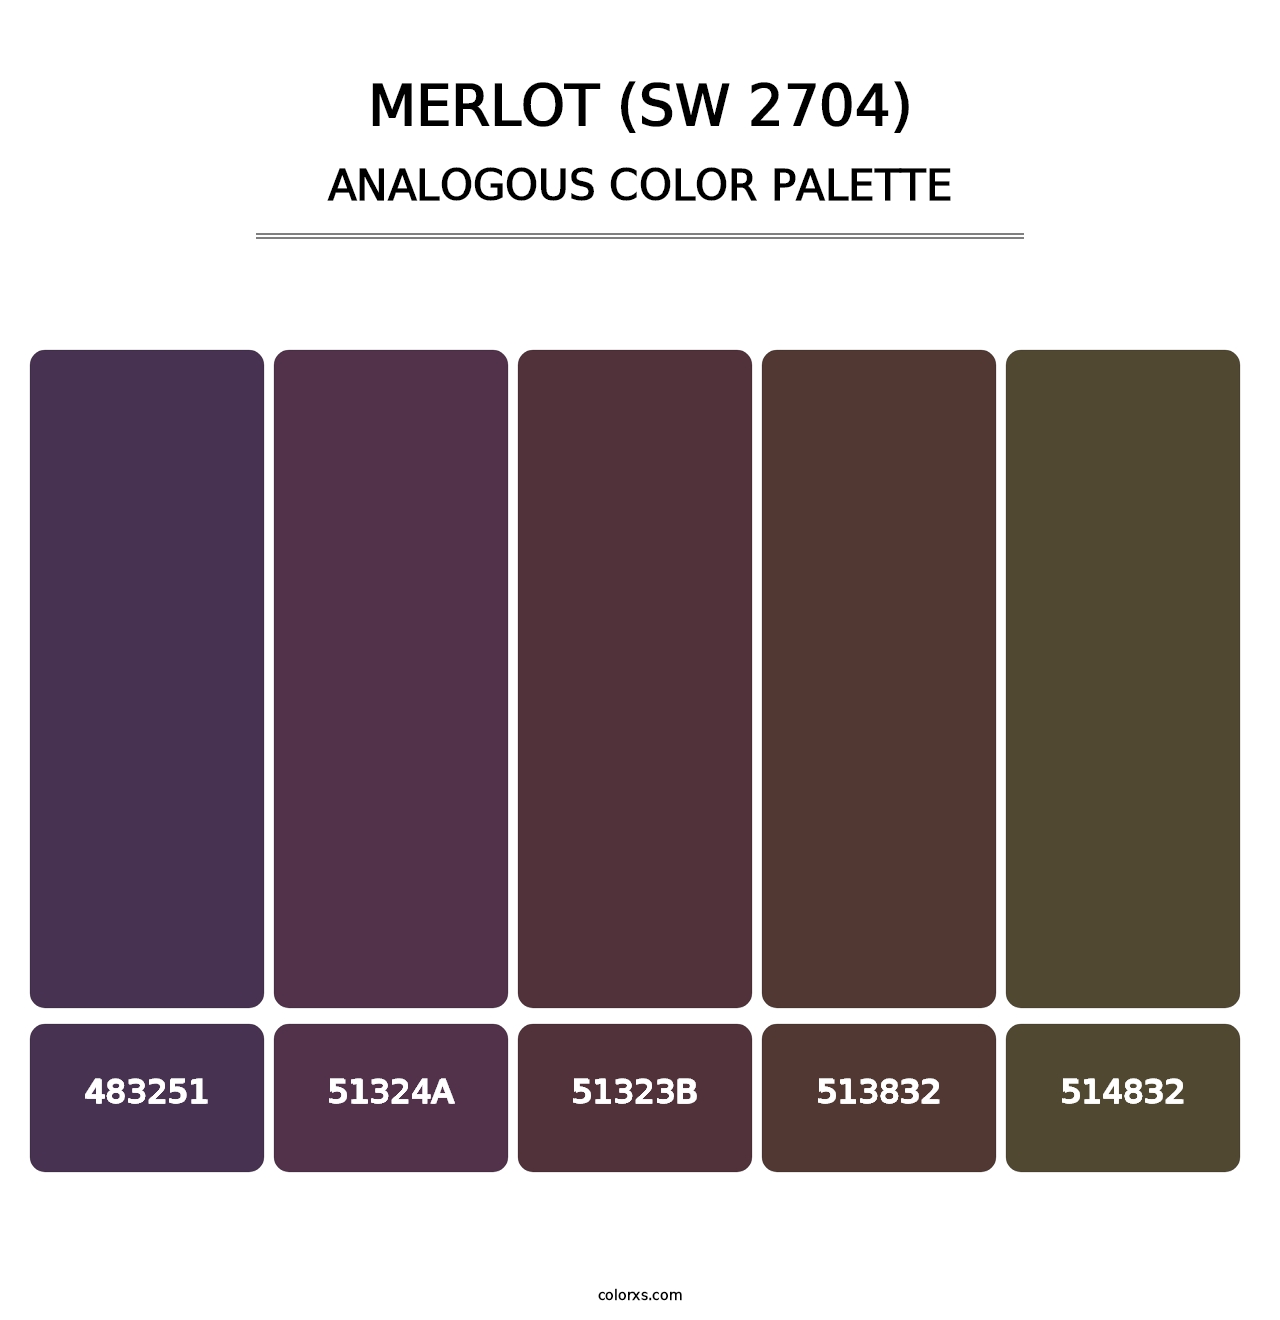 Merlot (SW 2704) - Analogous Color Palette